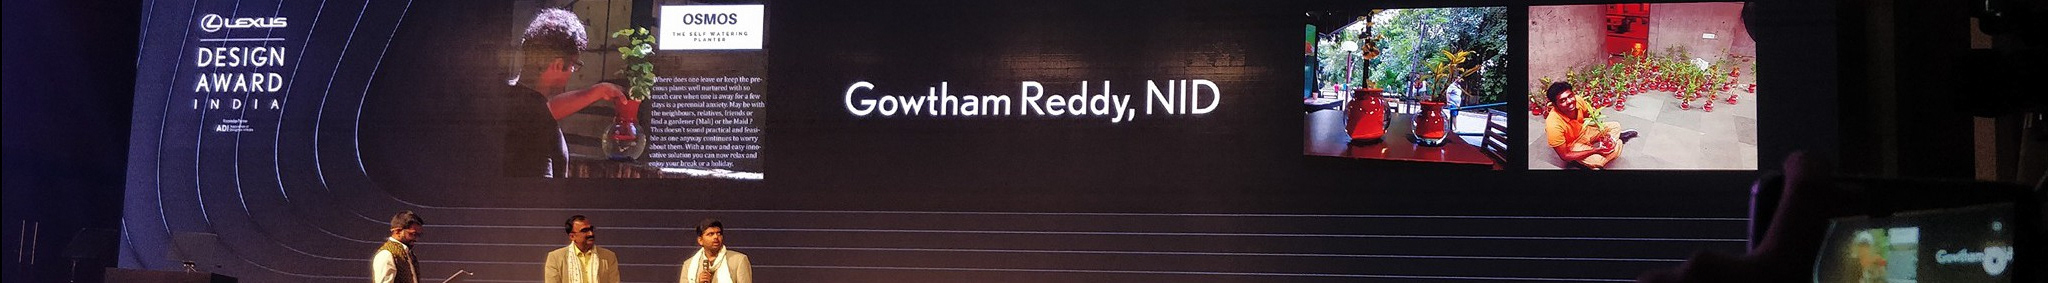 Profil-Banner von Gowtham Reddy